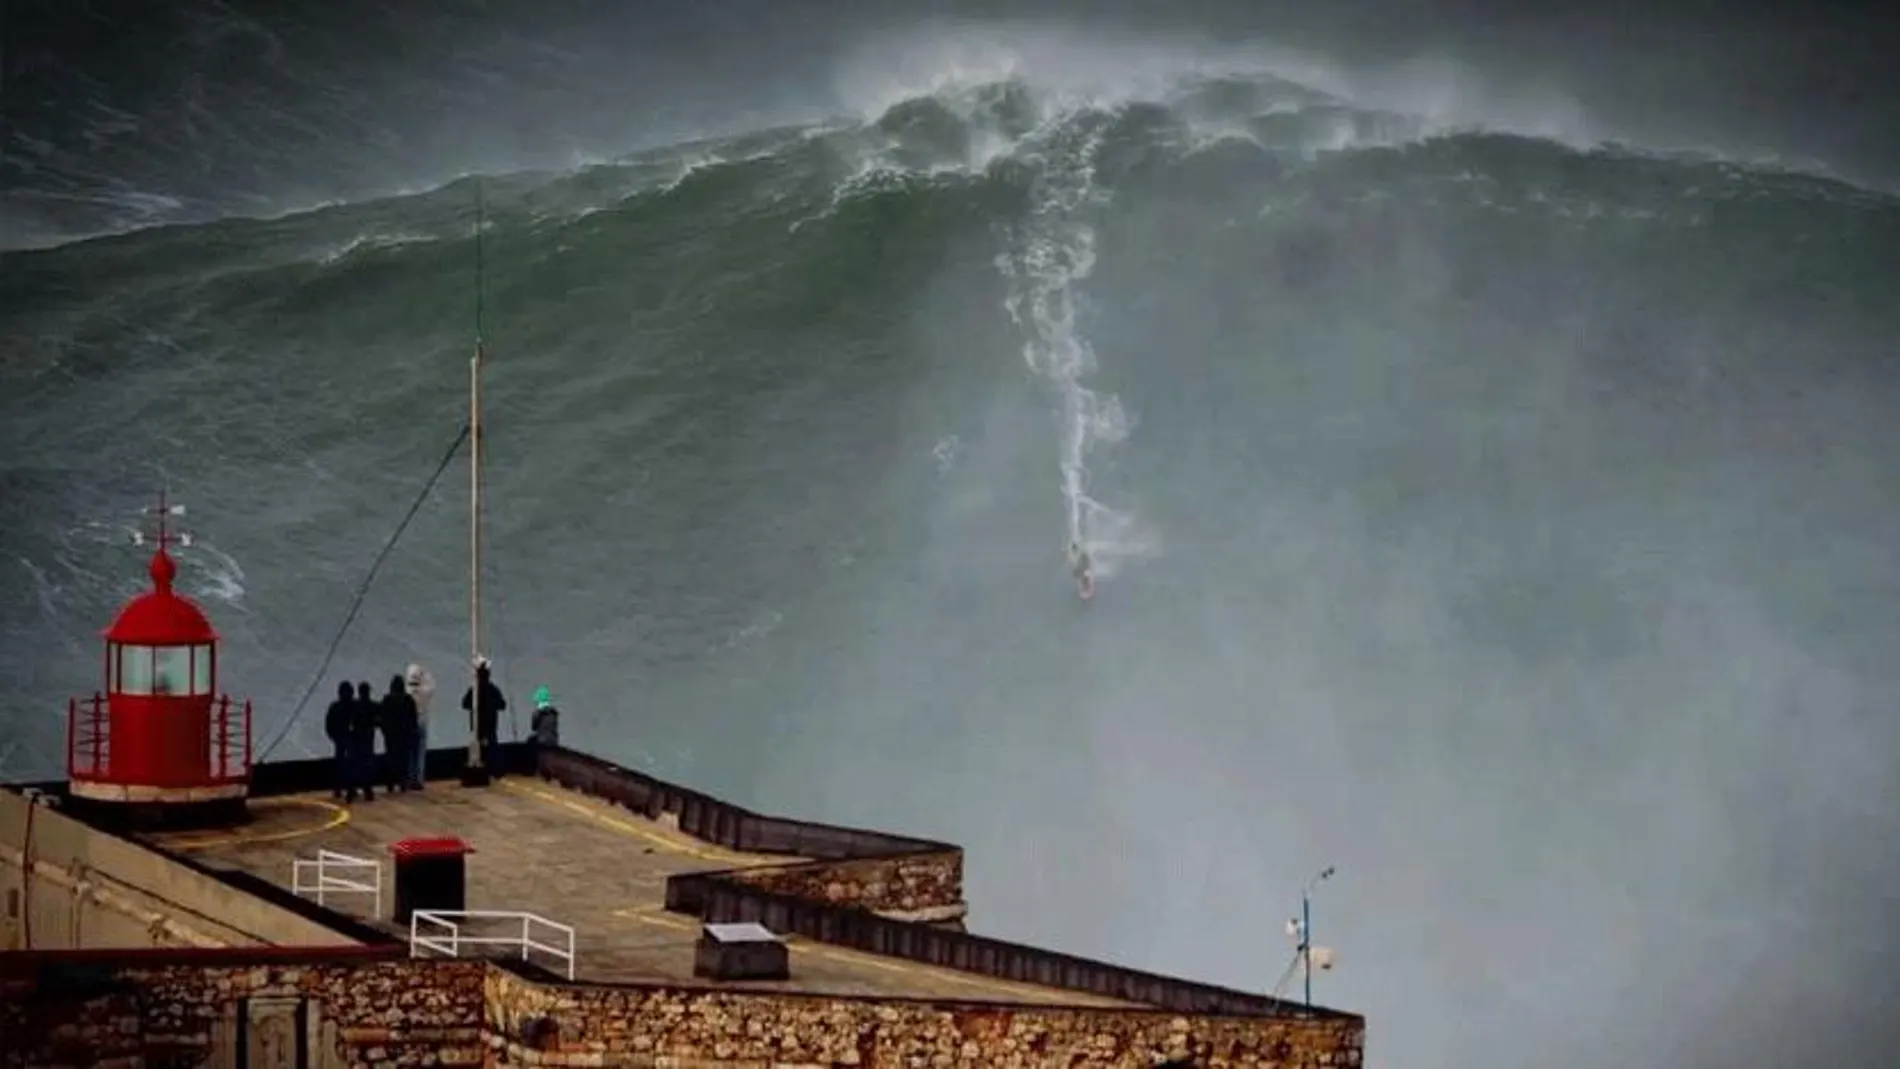 En esta zona se registran las olas más grandes del mundo durante algunos meses del año